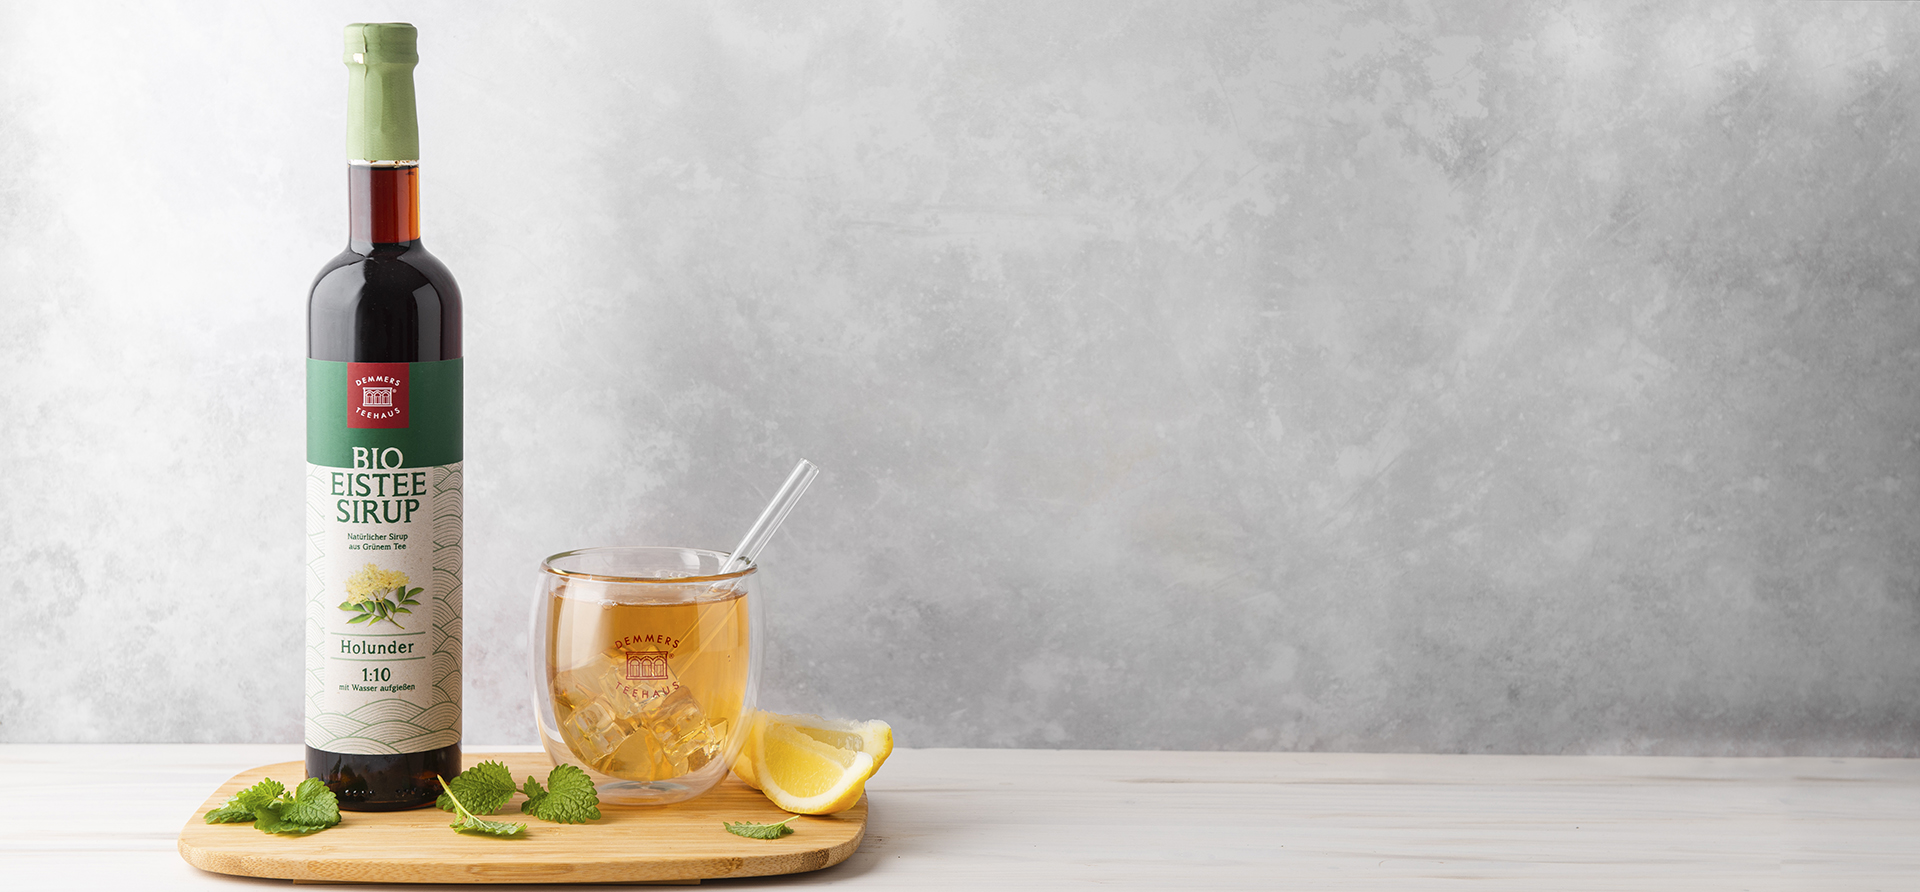 Demmers Teehaus BIO Eistee-Sirup Grüner Tee Holunder Flasche neben Glas mit kaltem Eistee und Limetten auf Holztablett 